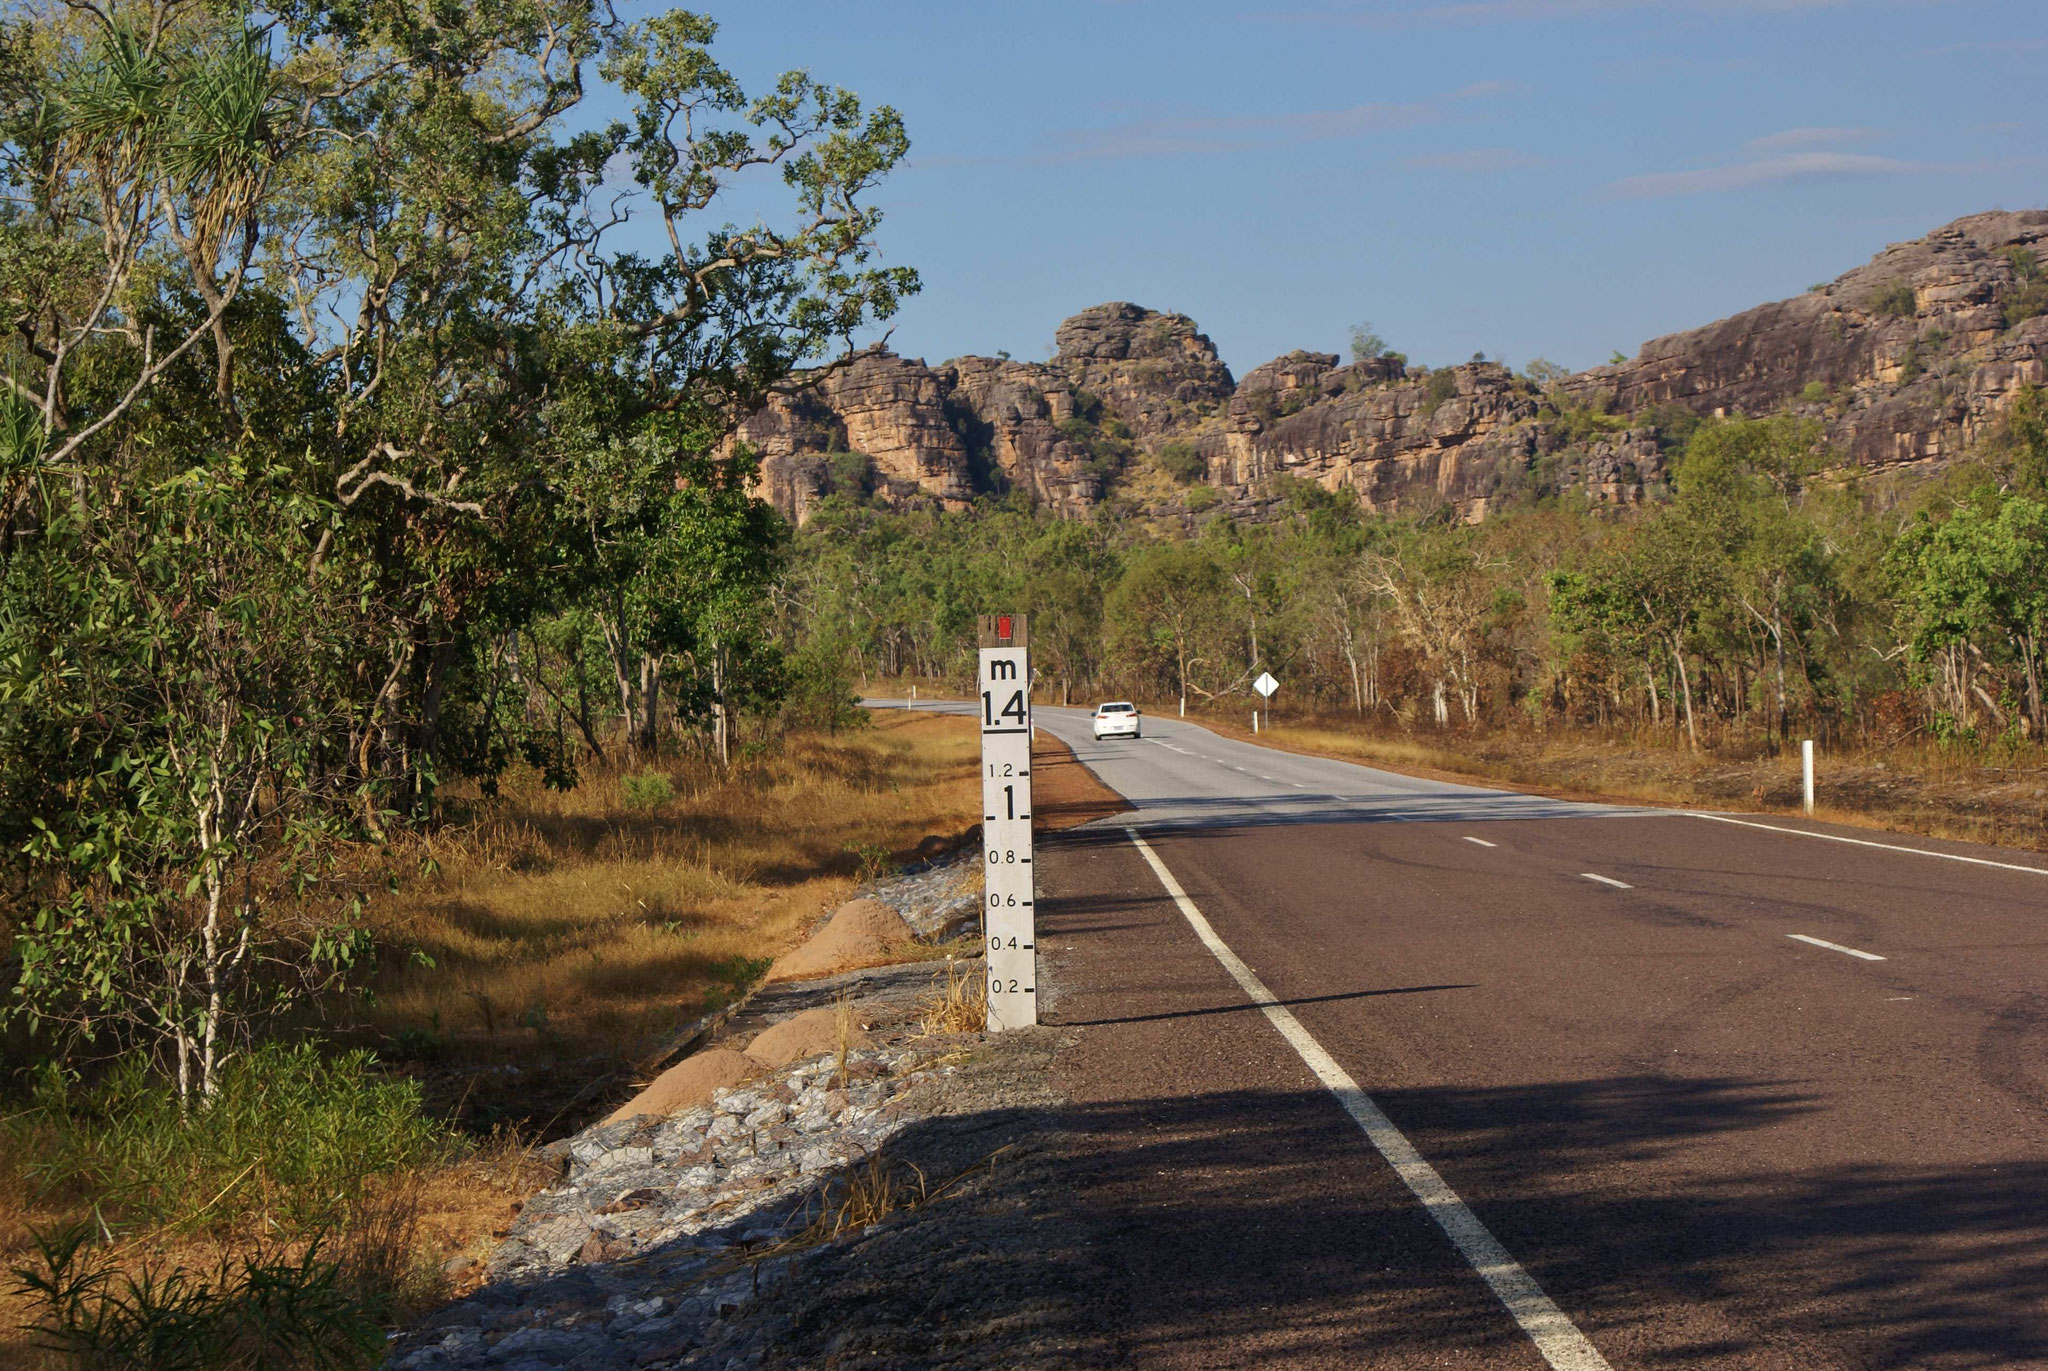 Wasserstandsanzeige im Northern Territory - während der Regenzeit häufig gerade noch sichtbar